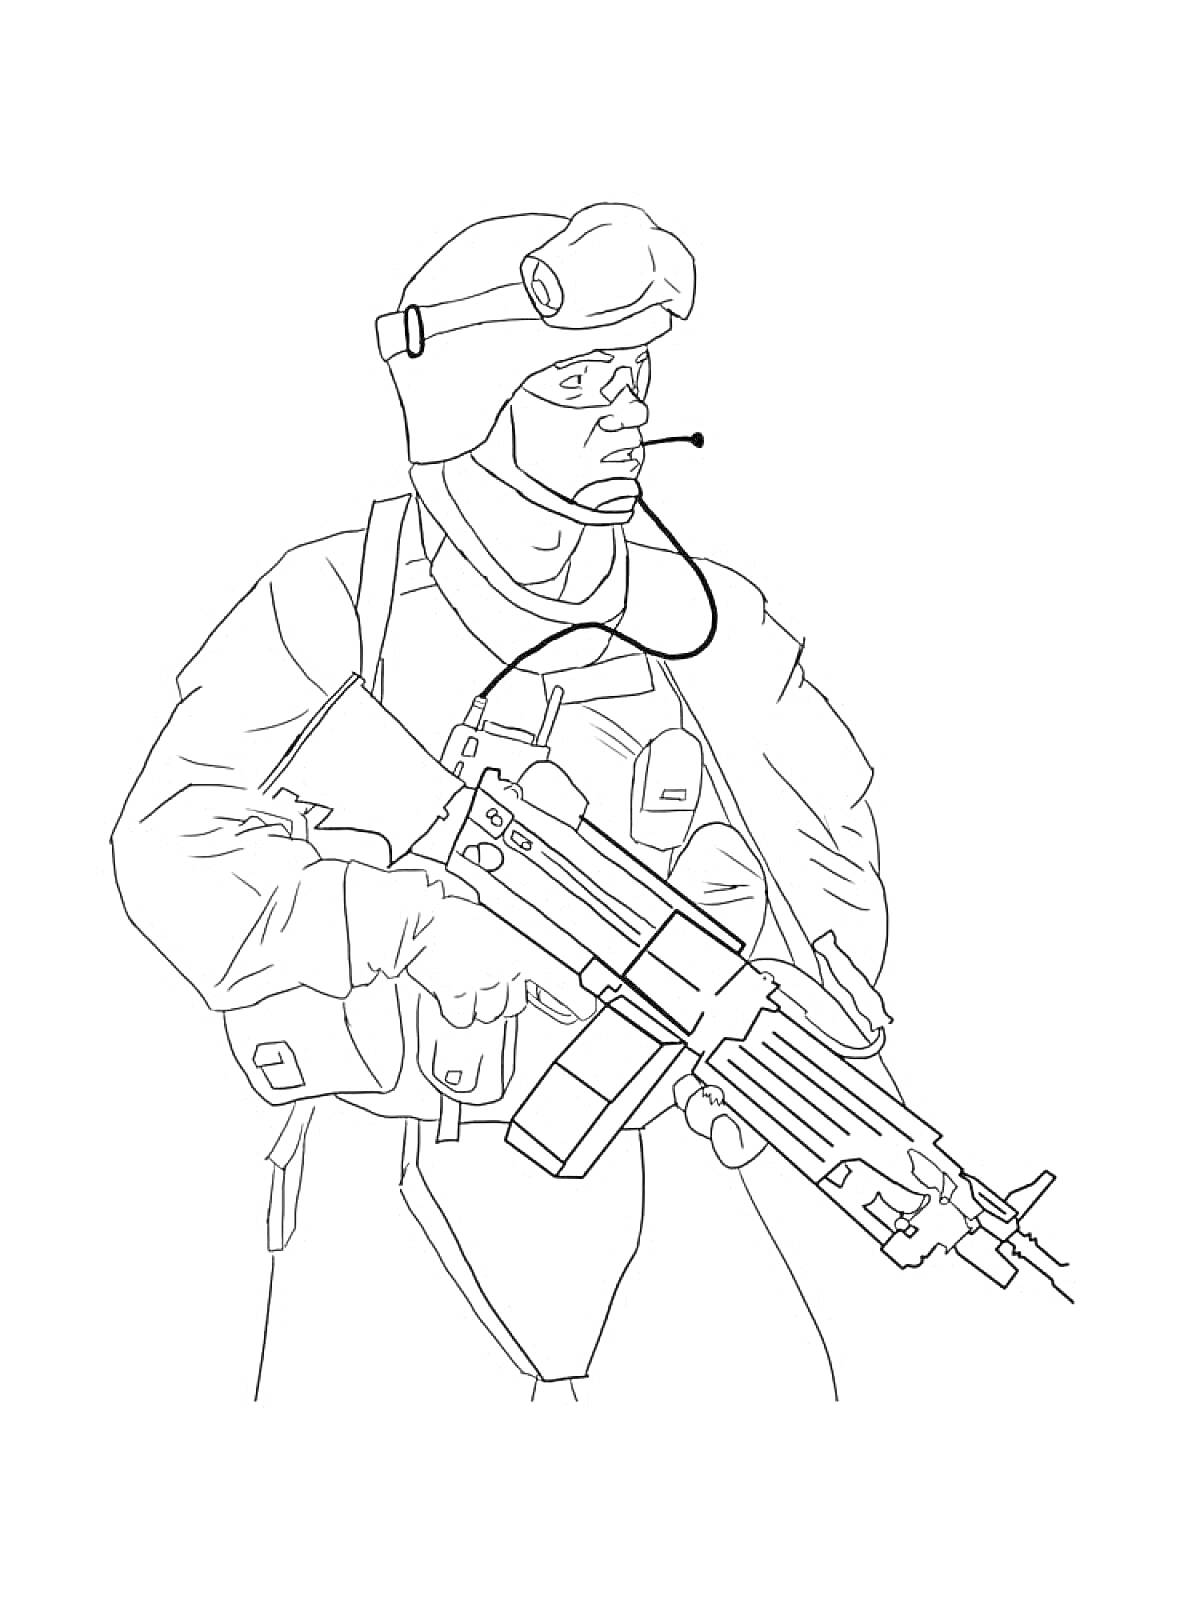  Солдат в шлеме с микрофоном и штурмовой винтовкой